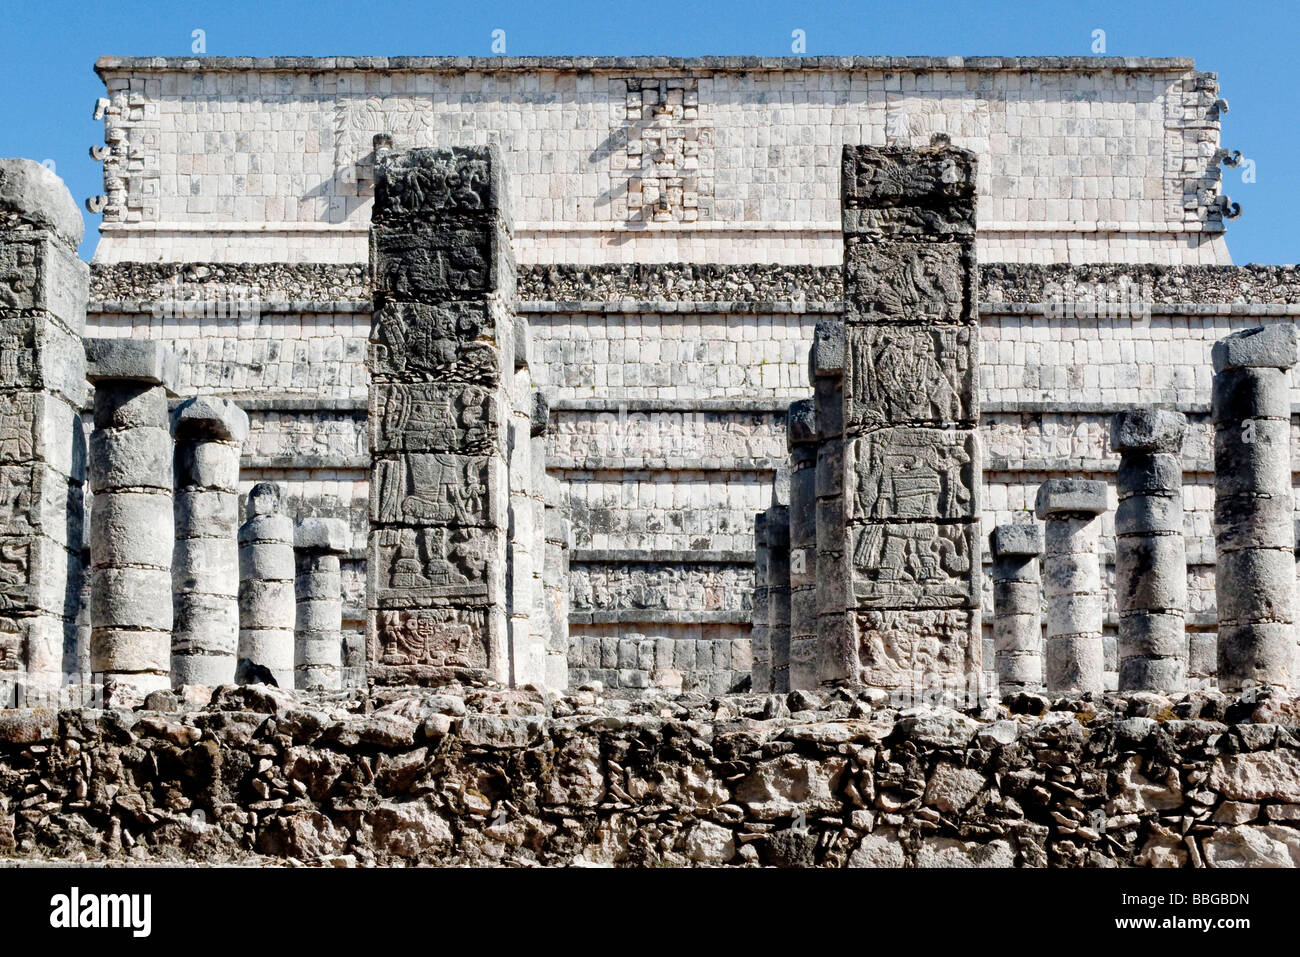 Gruppe der Tausend Säulen, in Chichen Itza, Yucatan, Mexiko, Mittelamerika Stockfoto